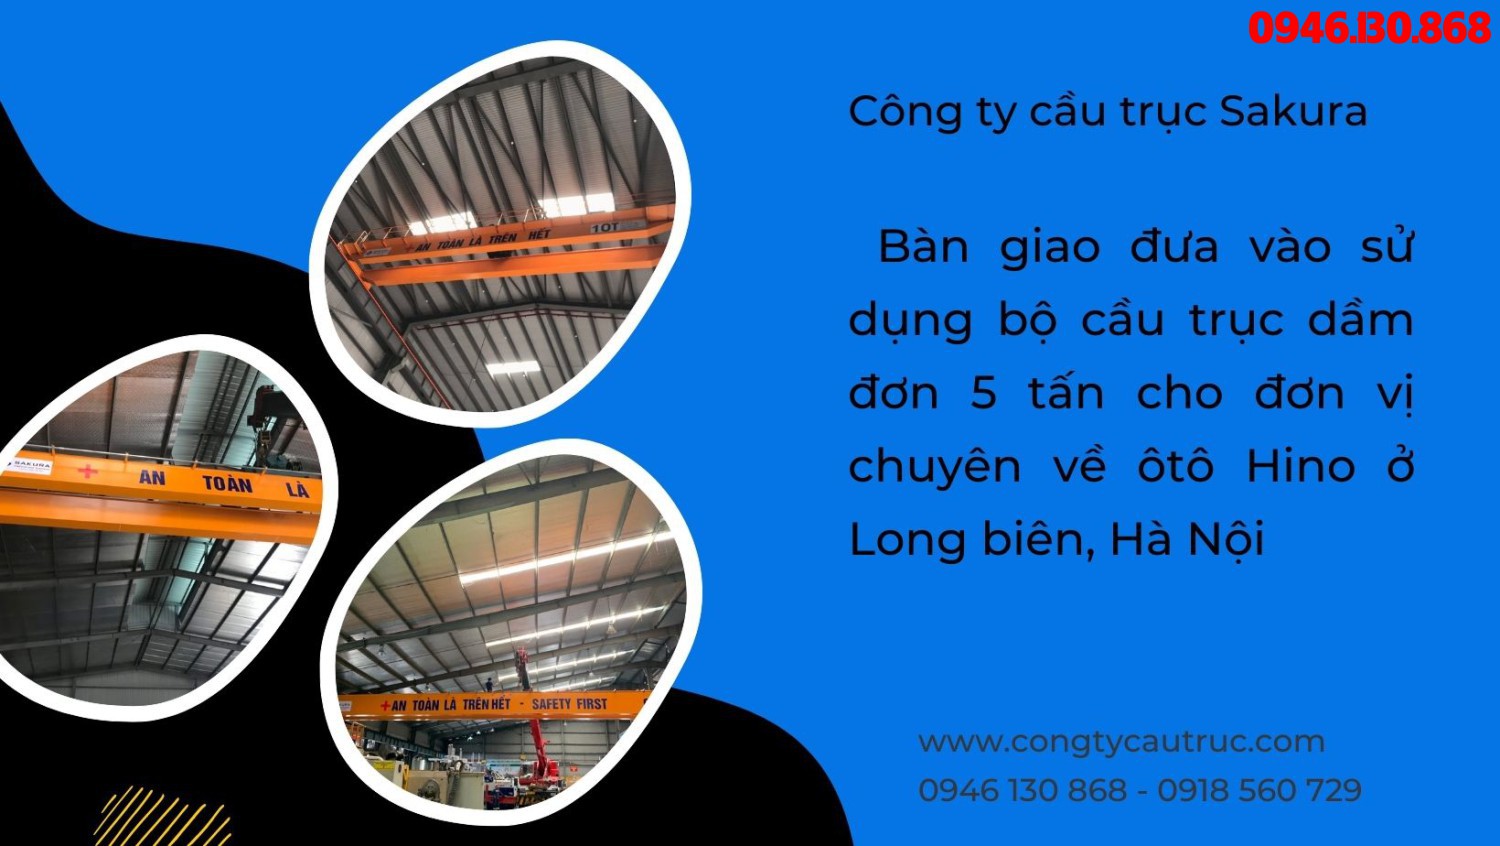 Công ty cầu trục Sakura bàn giao đưa vào sử dụng bộ cầu trục dầm đơn 5 tấn cho đơn vị chuyên về ôtô Hino ở Long biên, Hà Nội